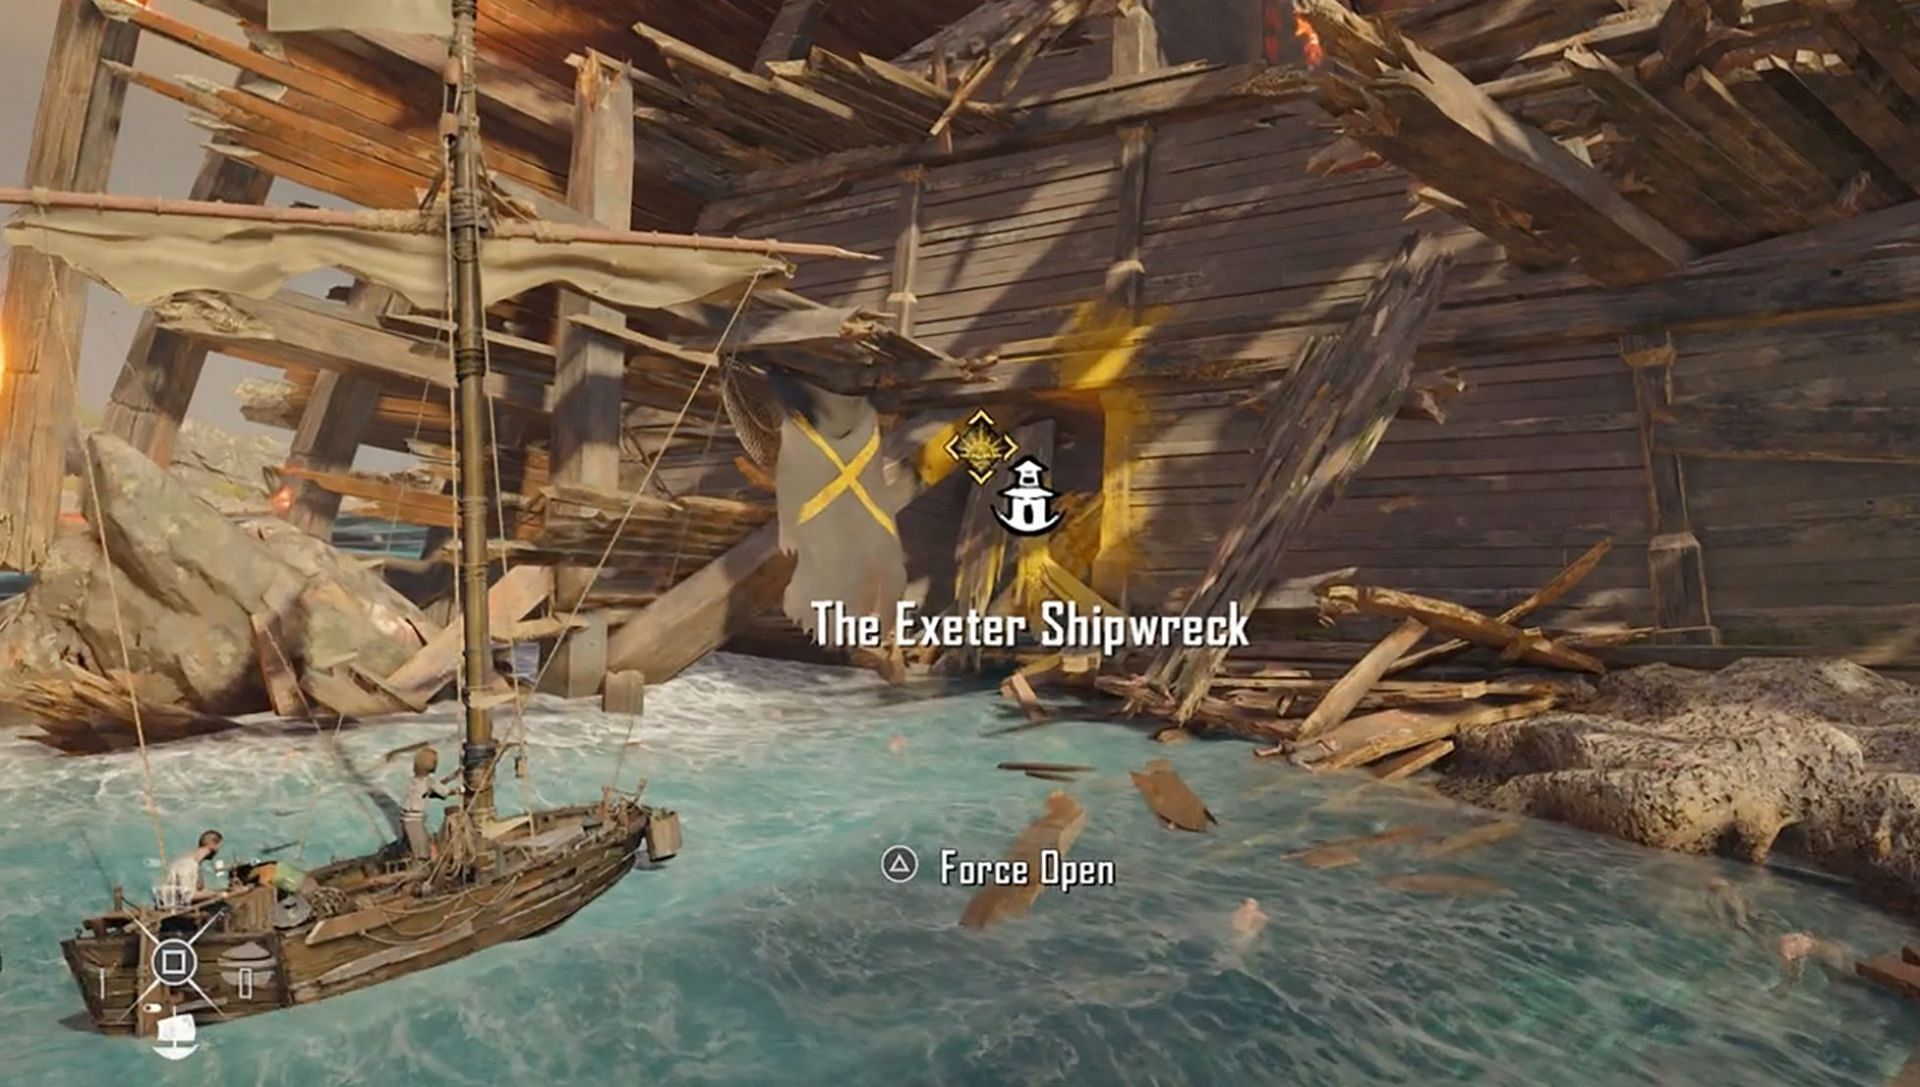 Exeter shipwreck in Skull and Bones (Image via Ubisoft)